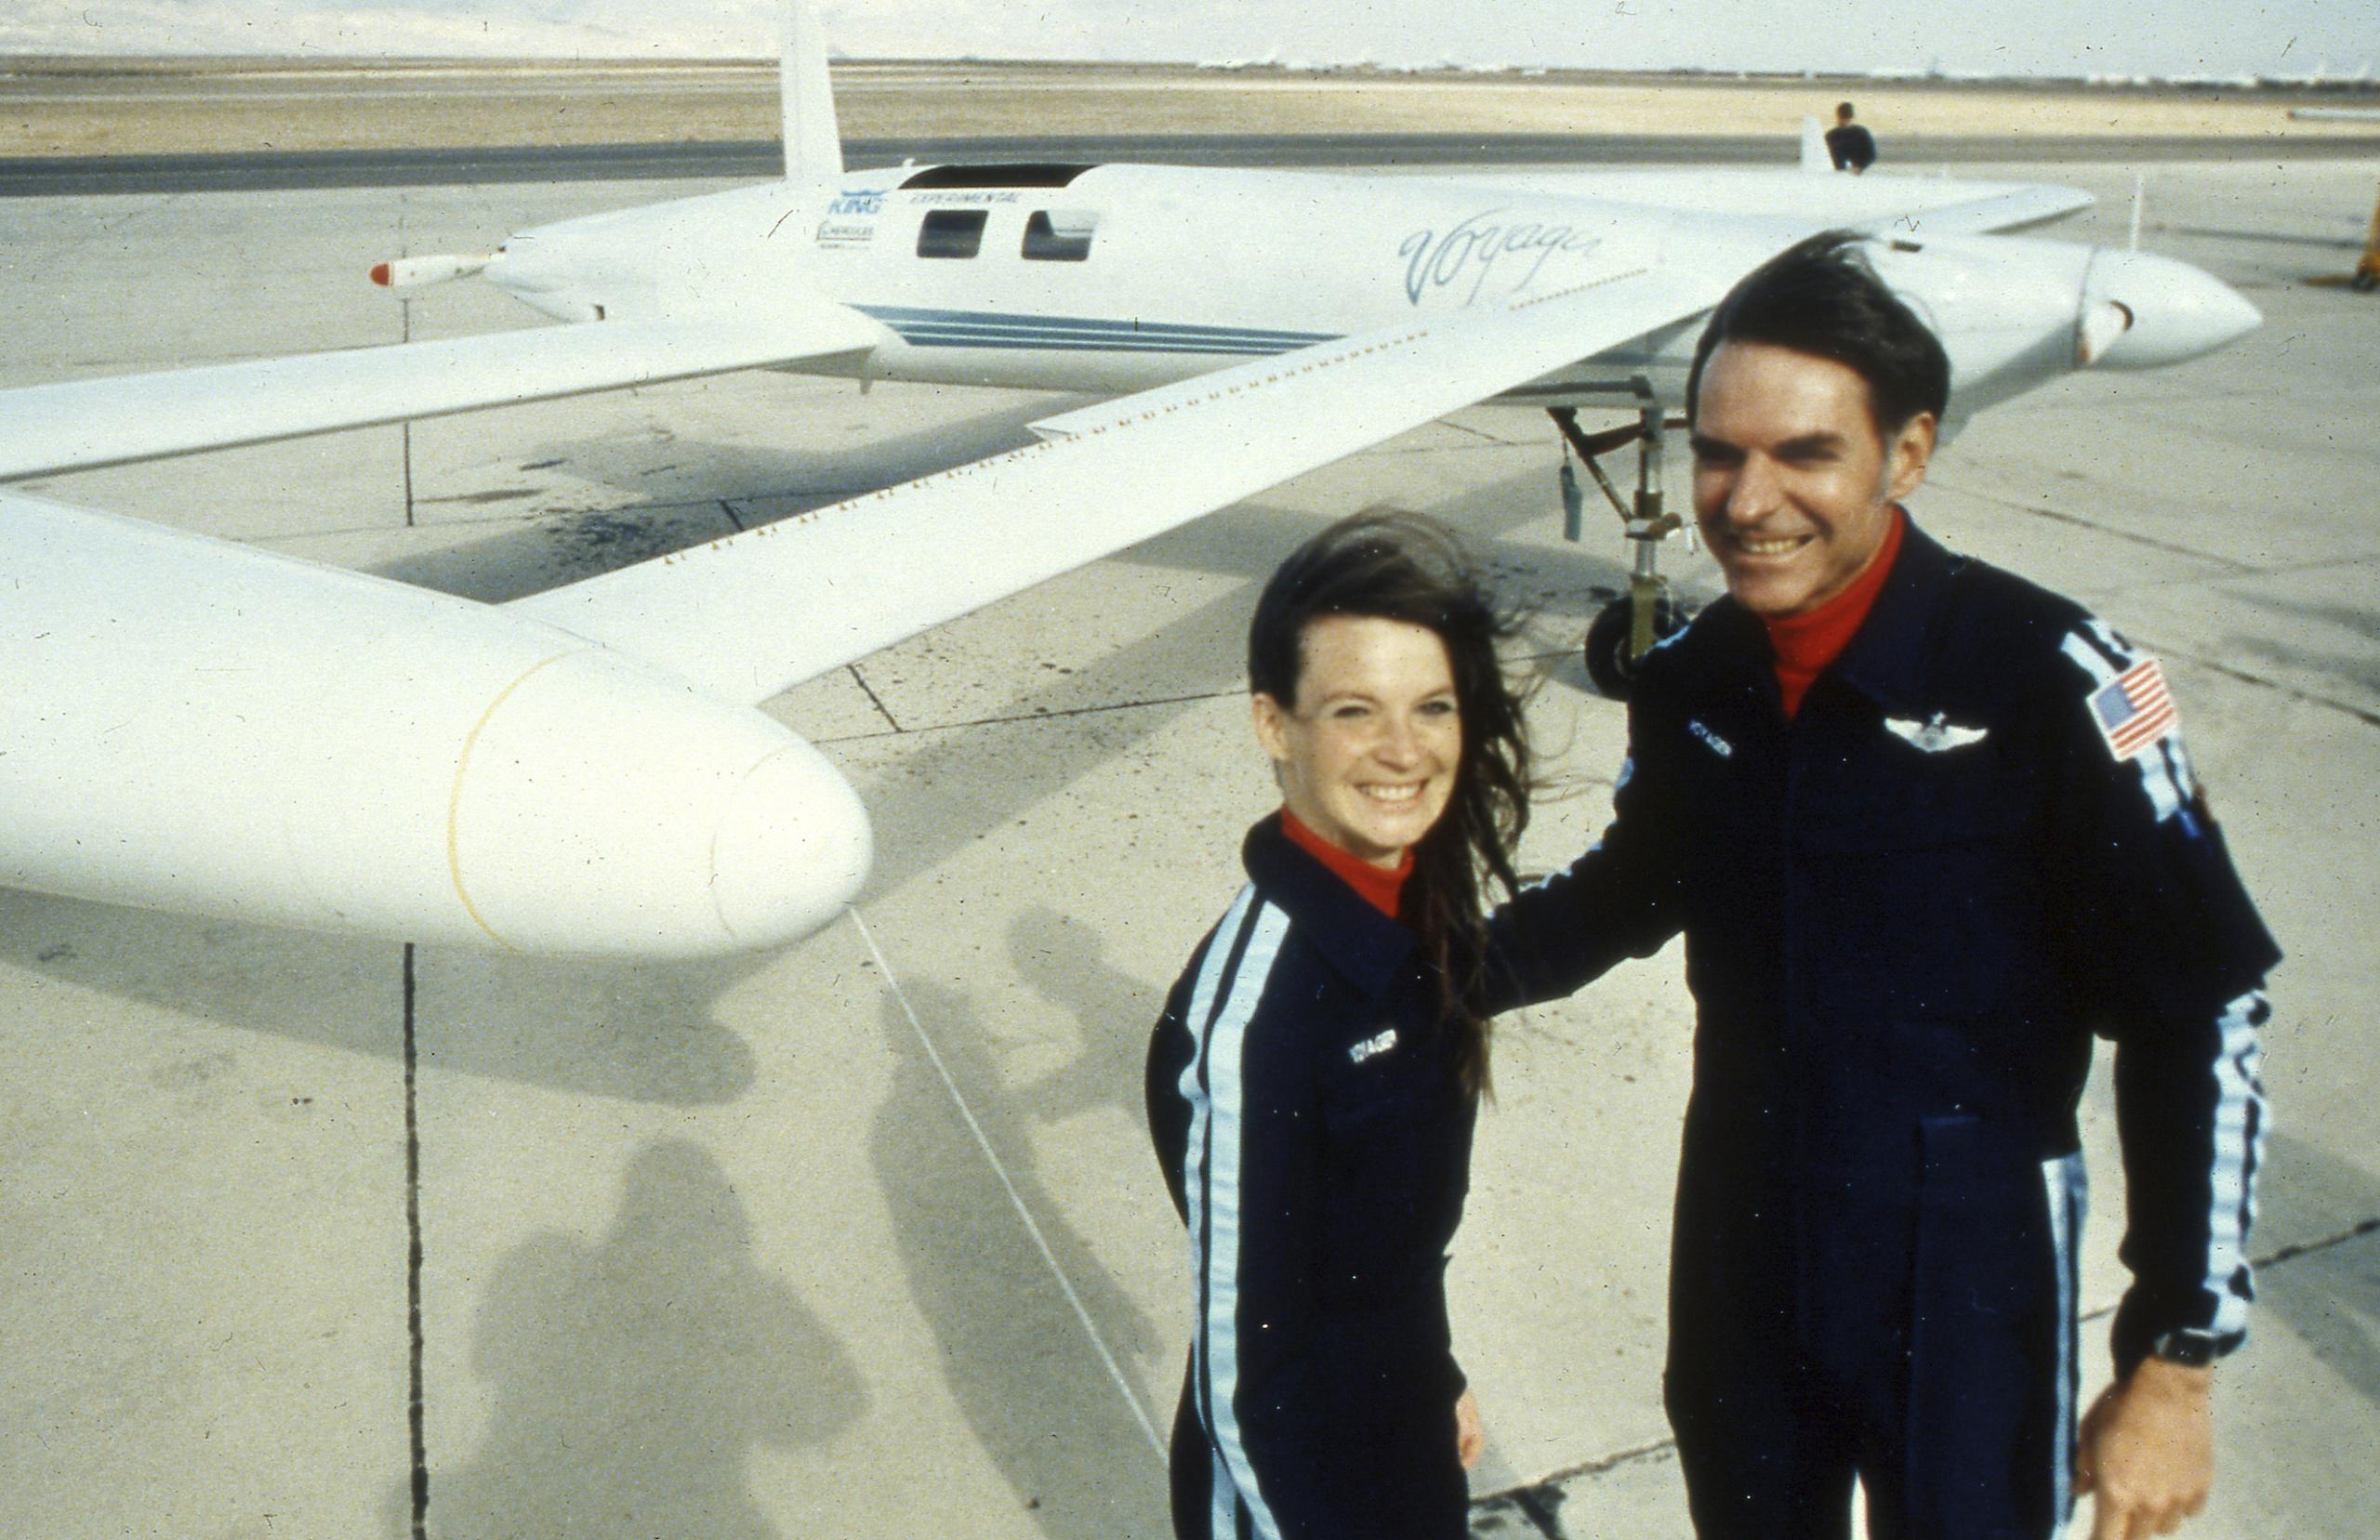 Dick Rutan y su copiloto Jeana Yeager, junto al Voyager, tras haber completado la vuelta al mundo sin escalas en 1985. Rutan falleció el viernes a los 85 años.